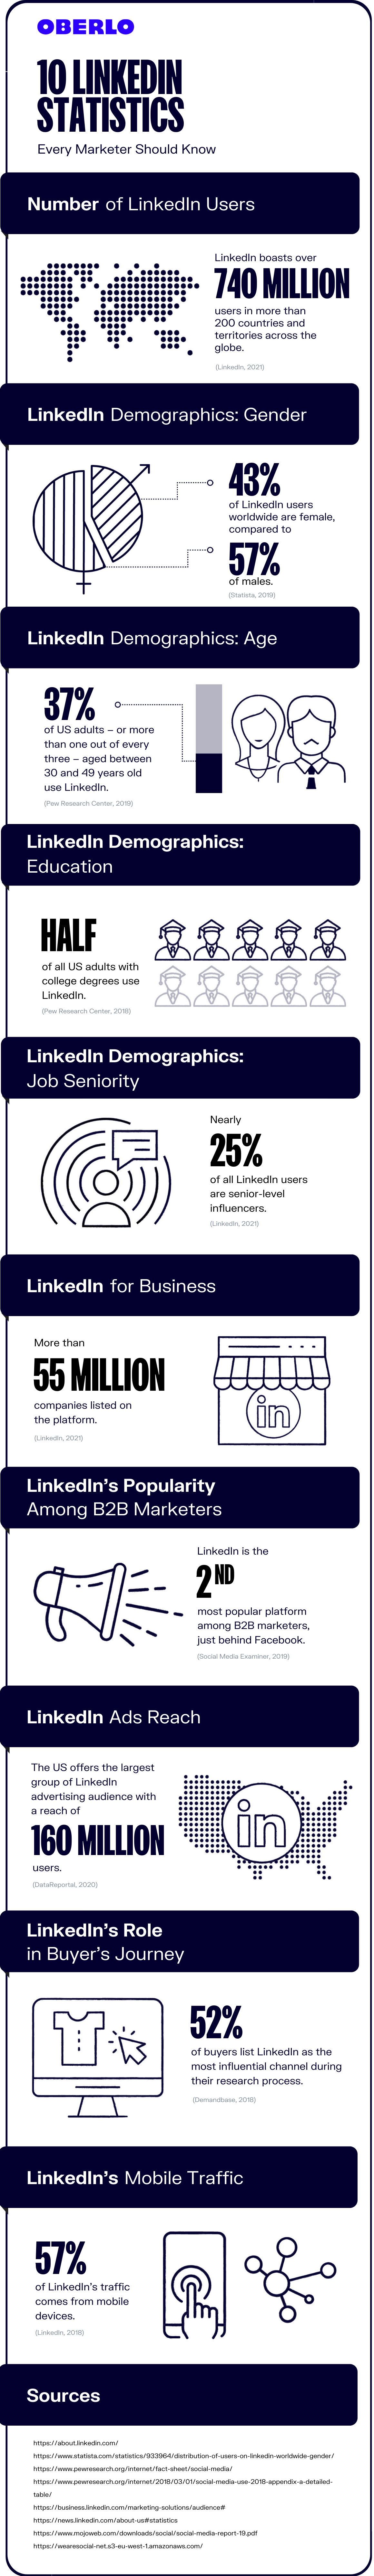 Gráfico de estadísticas de LinkedIn que debes conocer